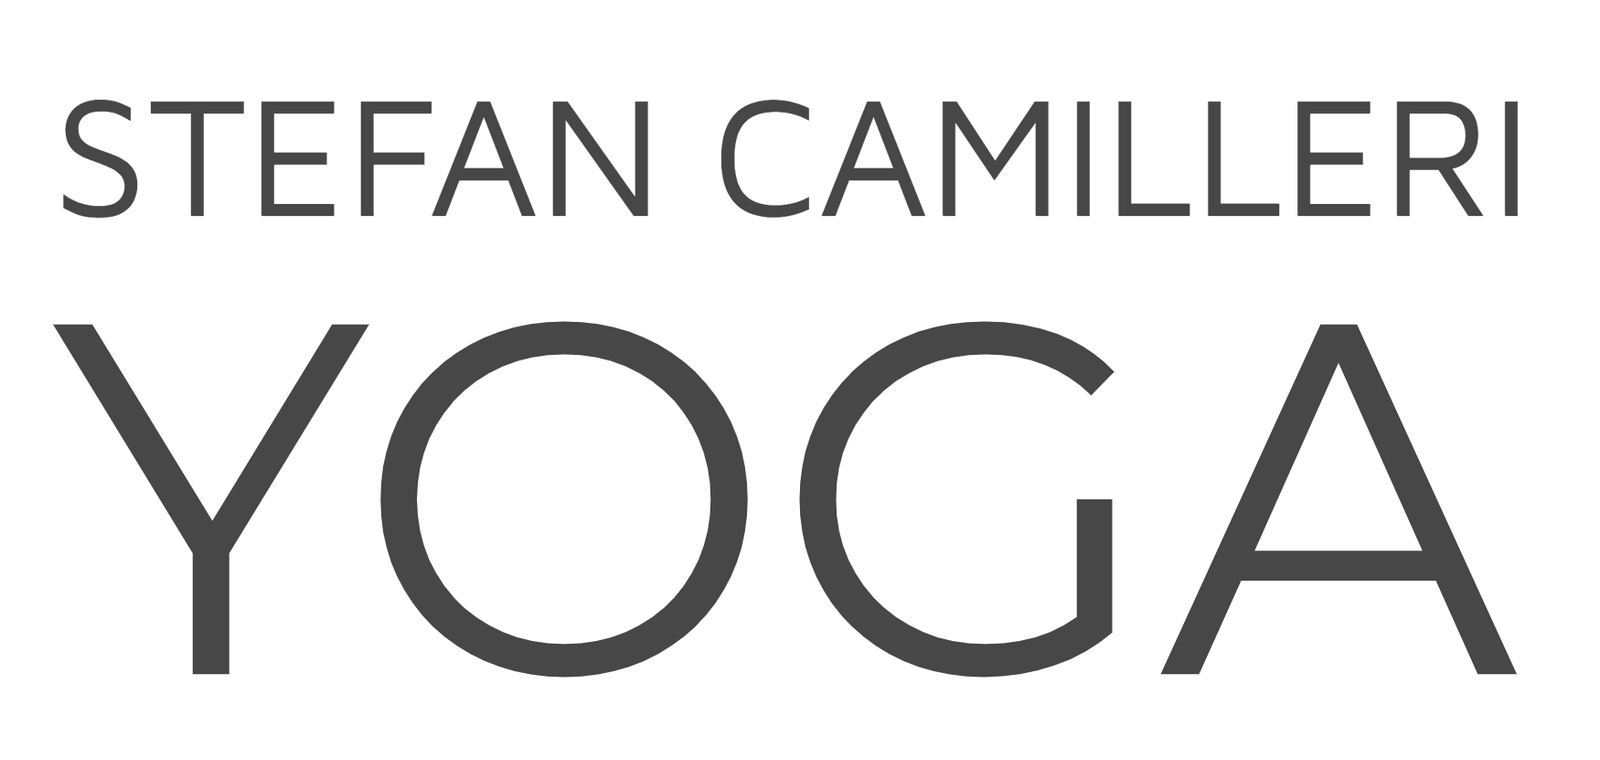 Stefan Camilleri Yoga